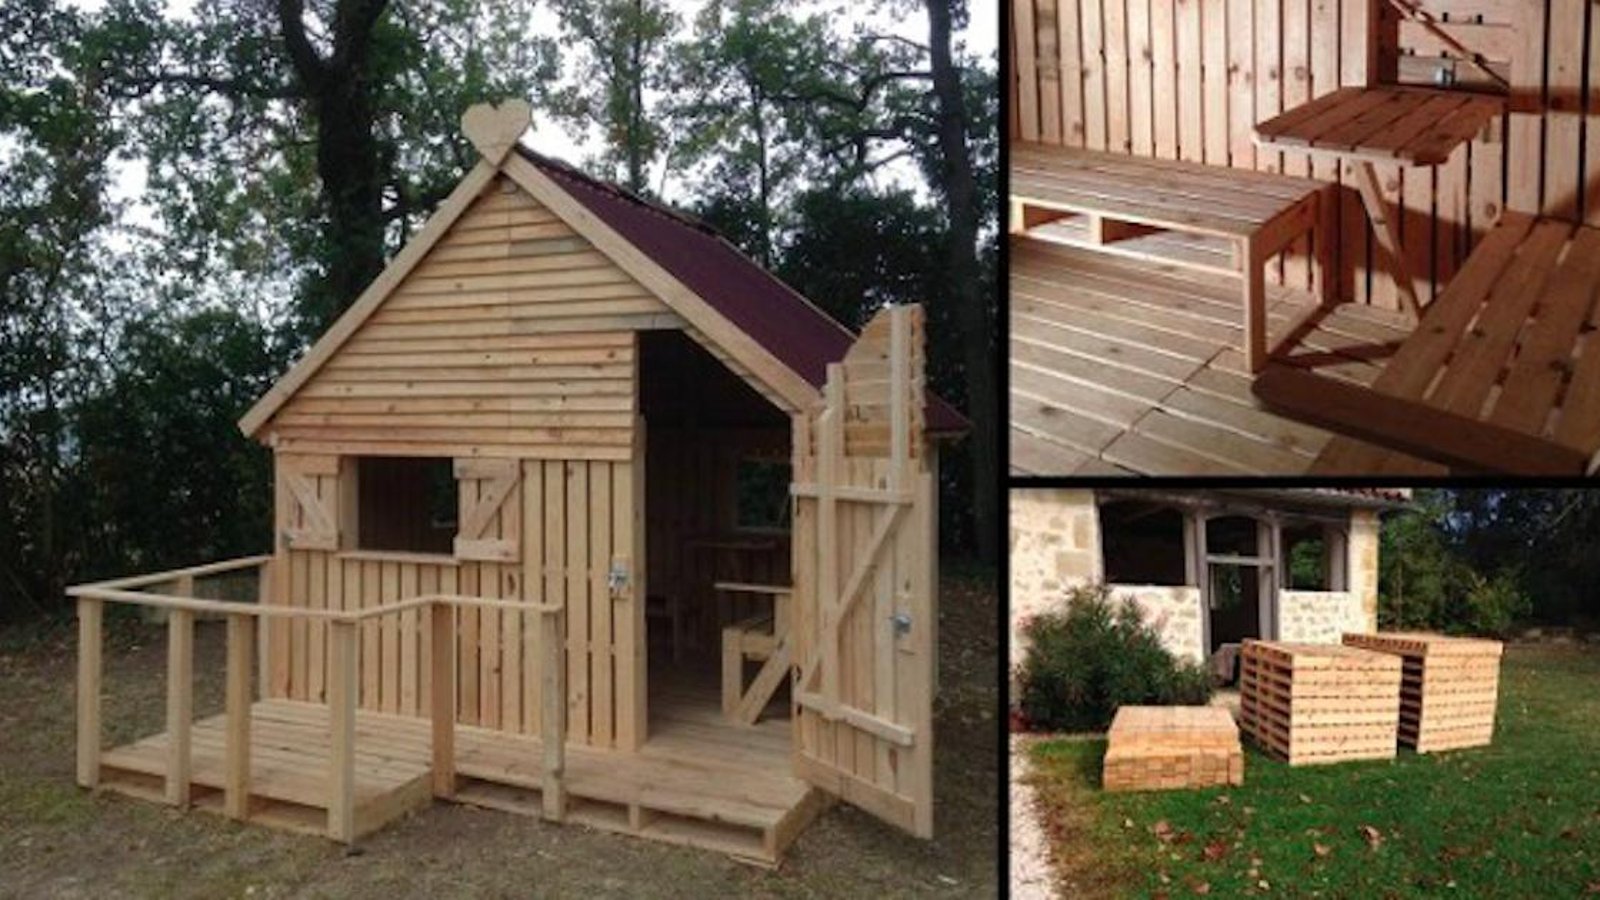 Comment construire une maison pour enfants avec du bois de palettes